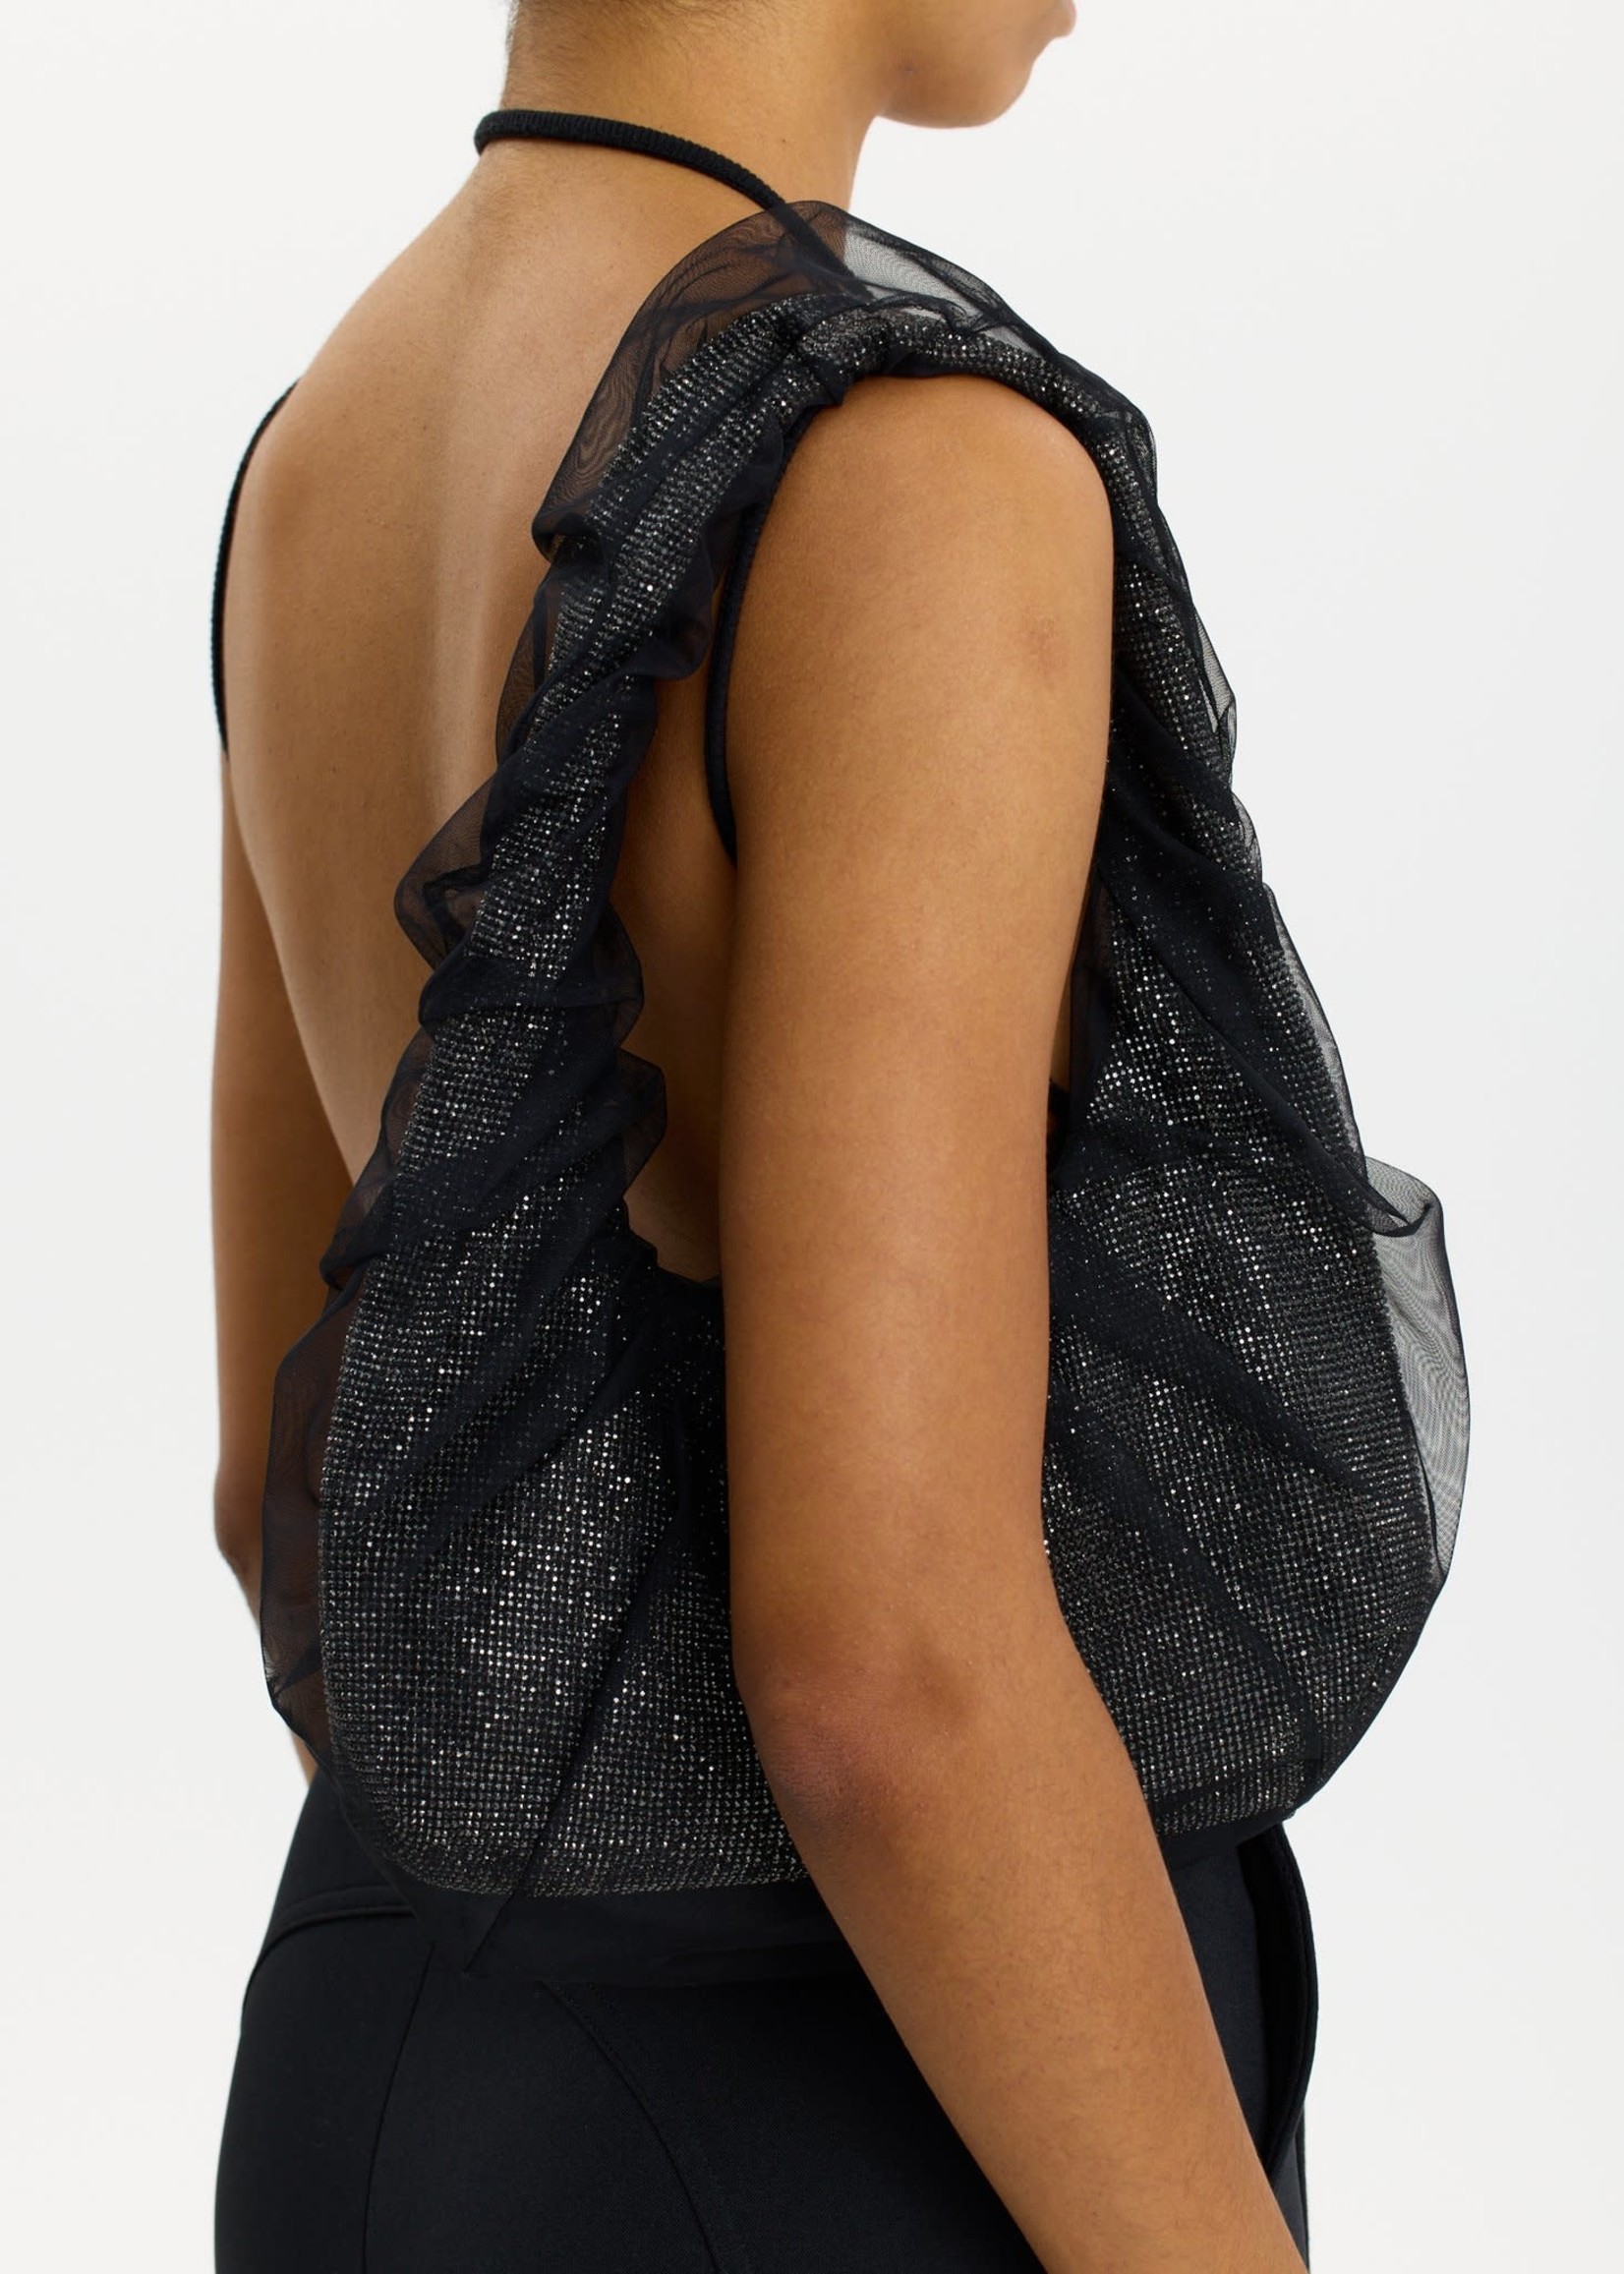 KARA Tulle Crystal Mesh Armpit Bag in Black